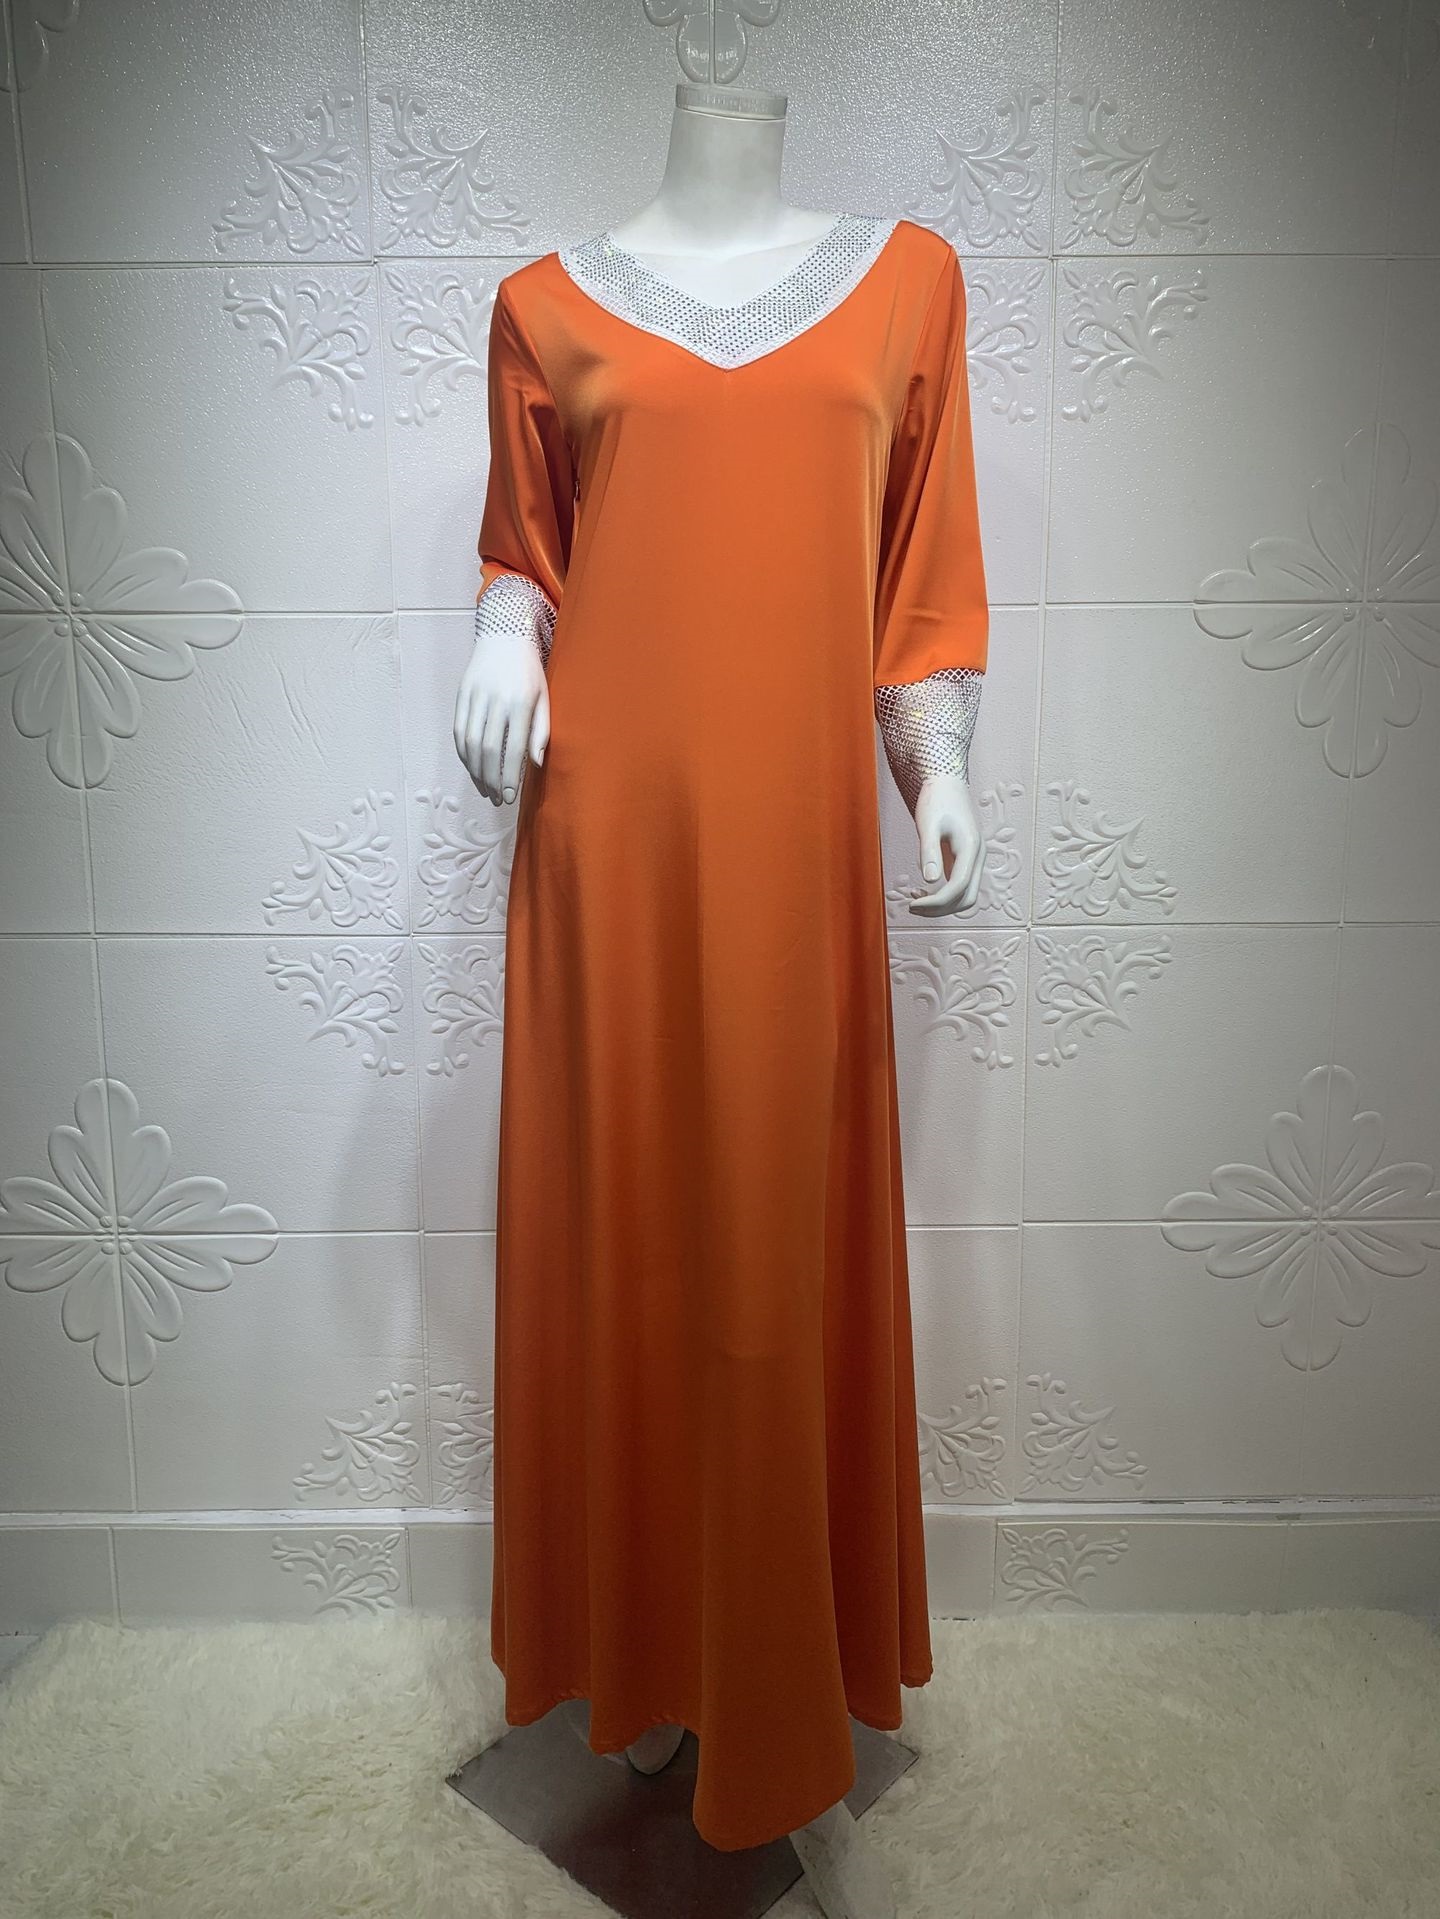 Robe arabe orange